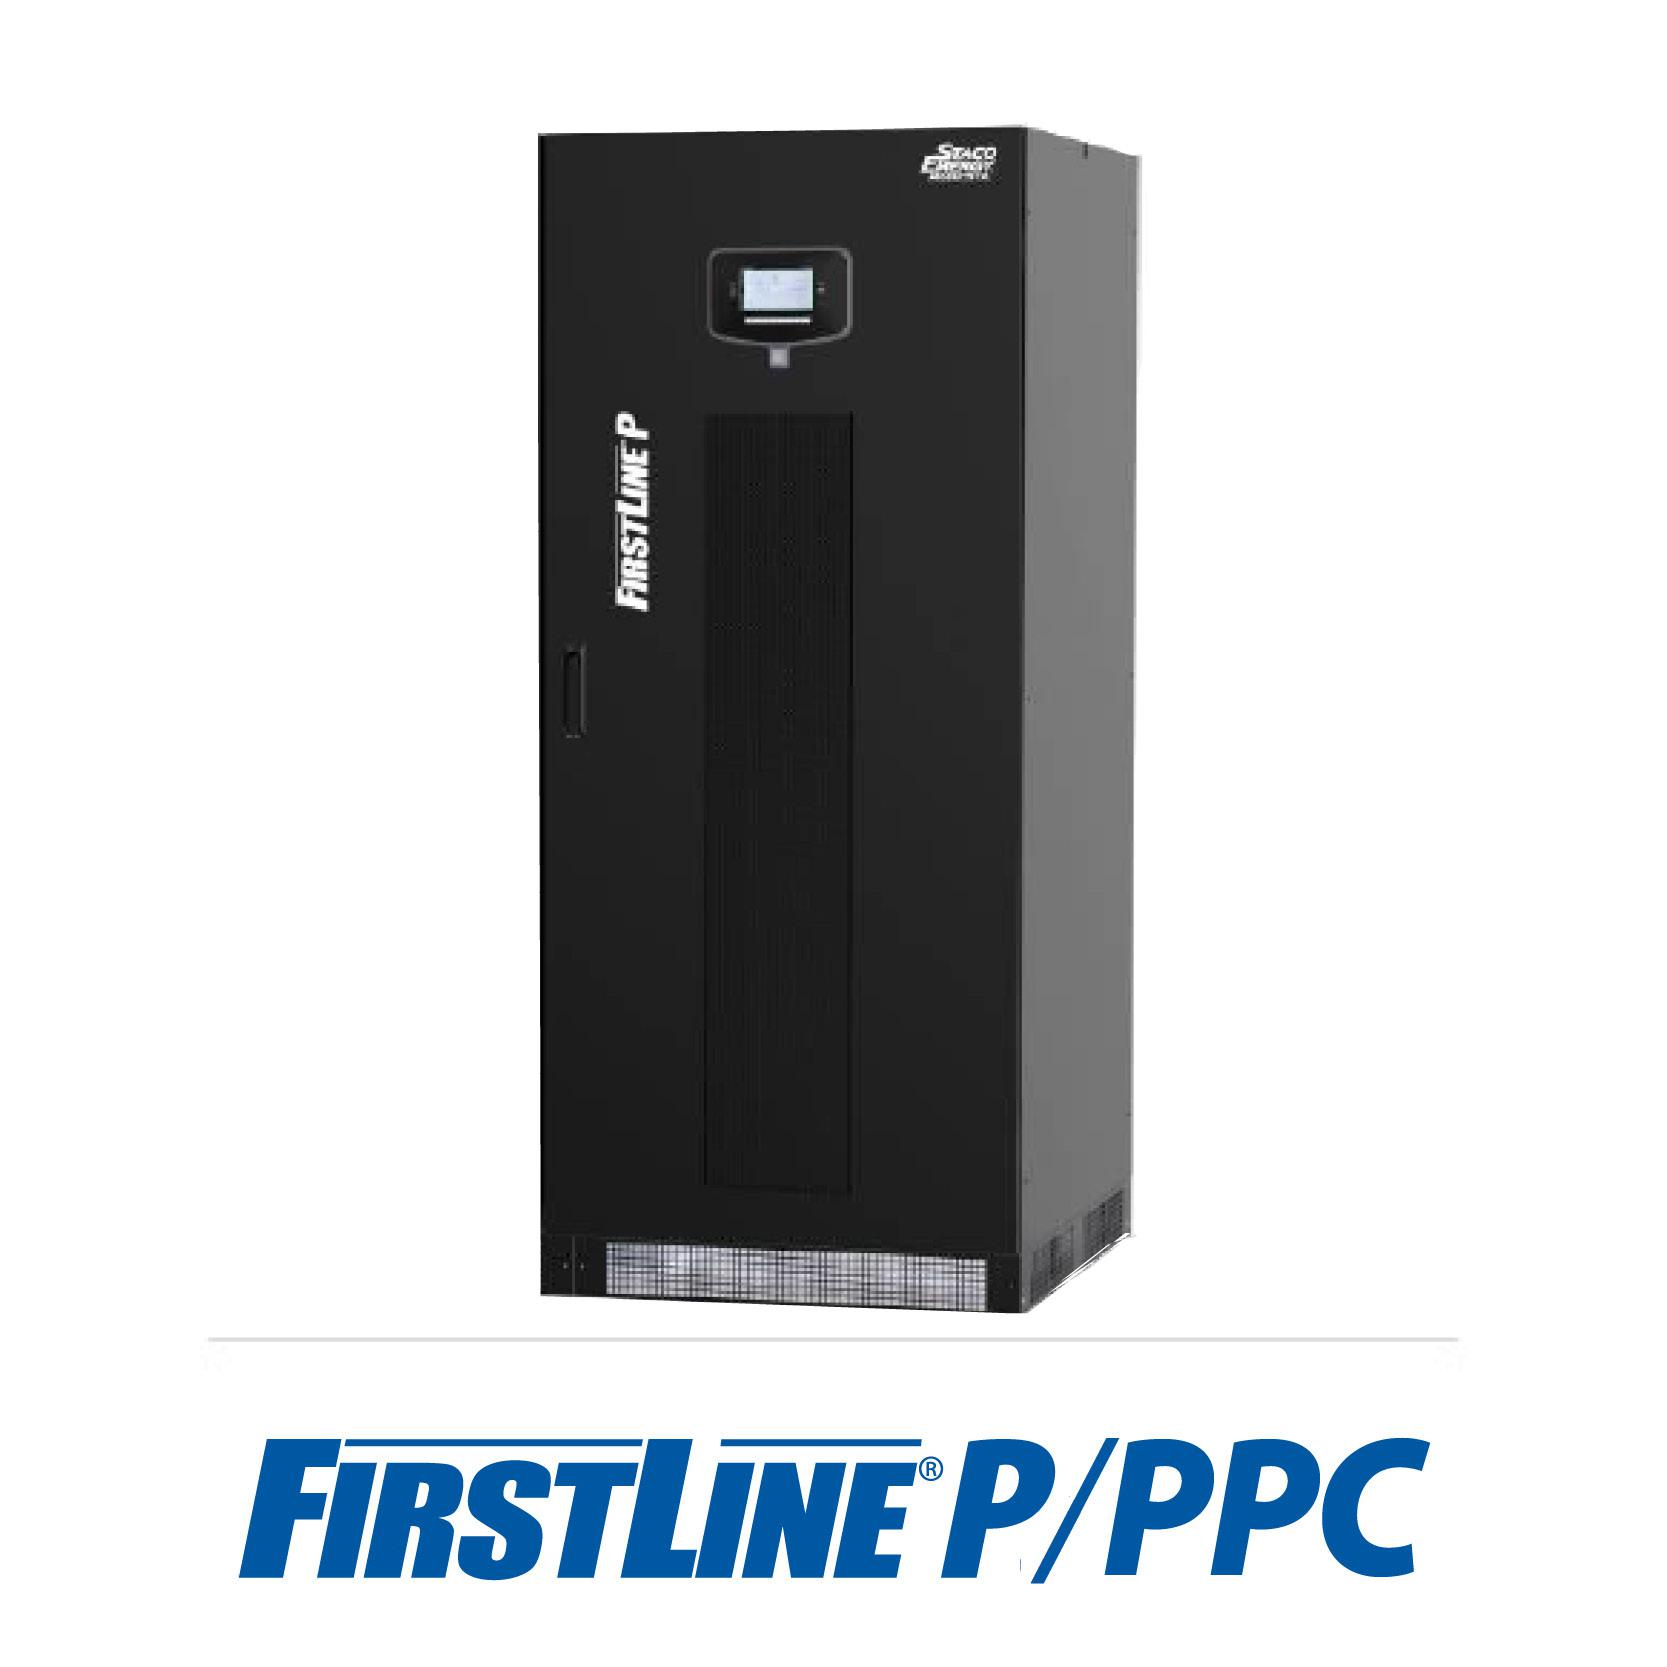 FirstLine PLT/PPC